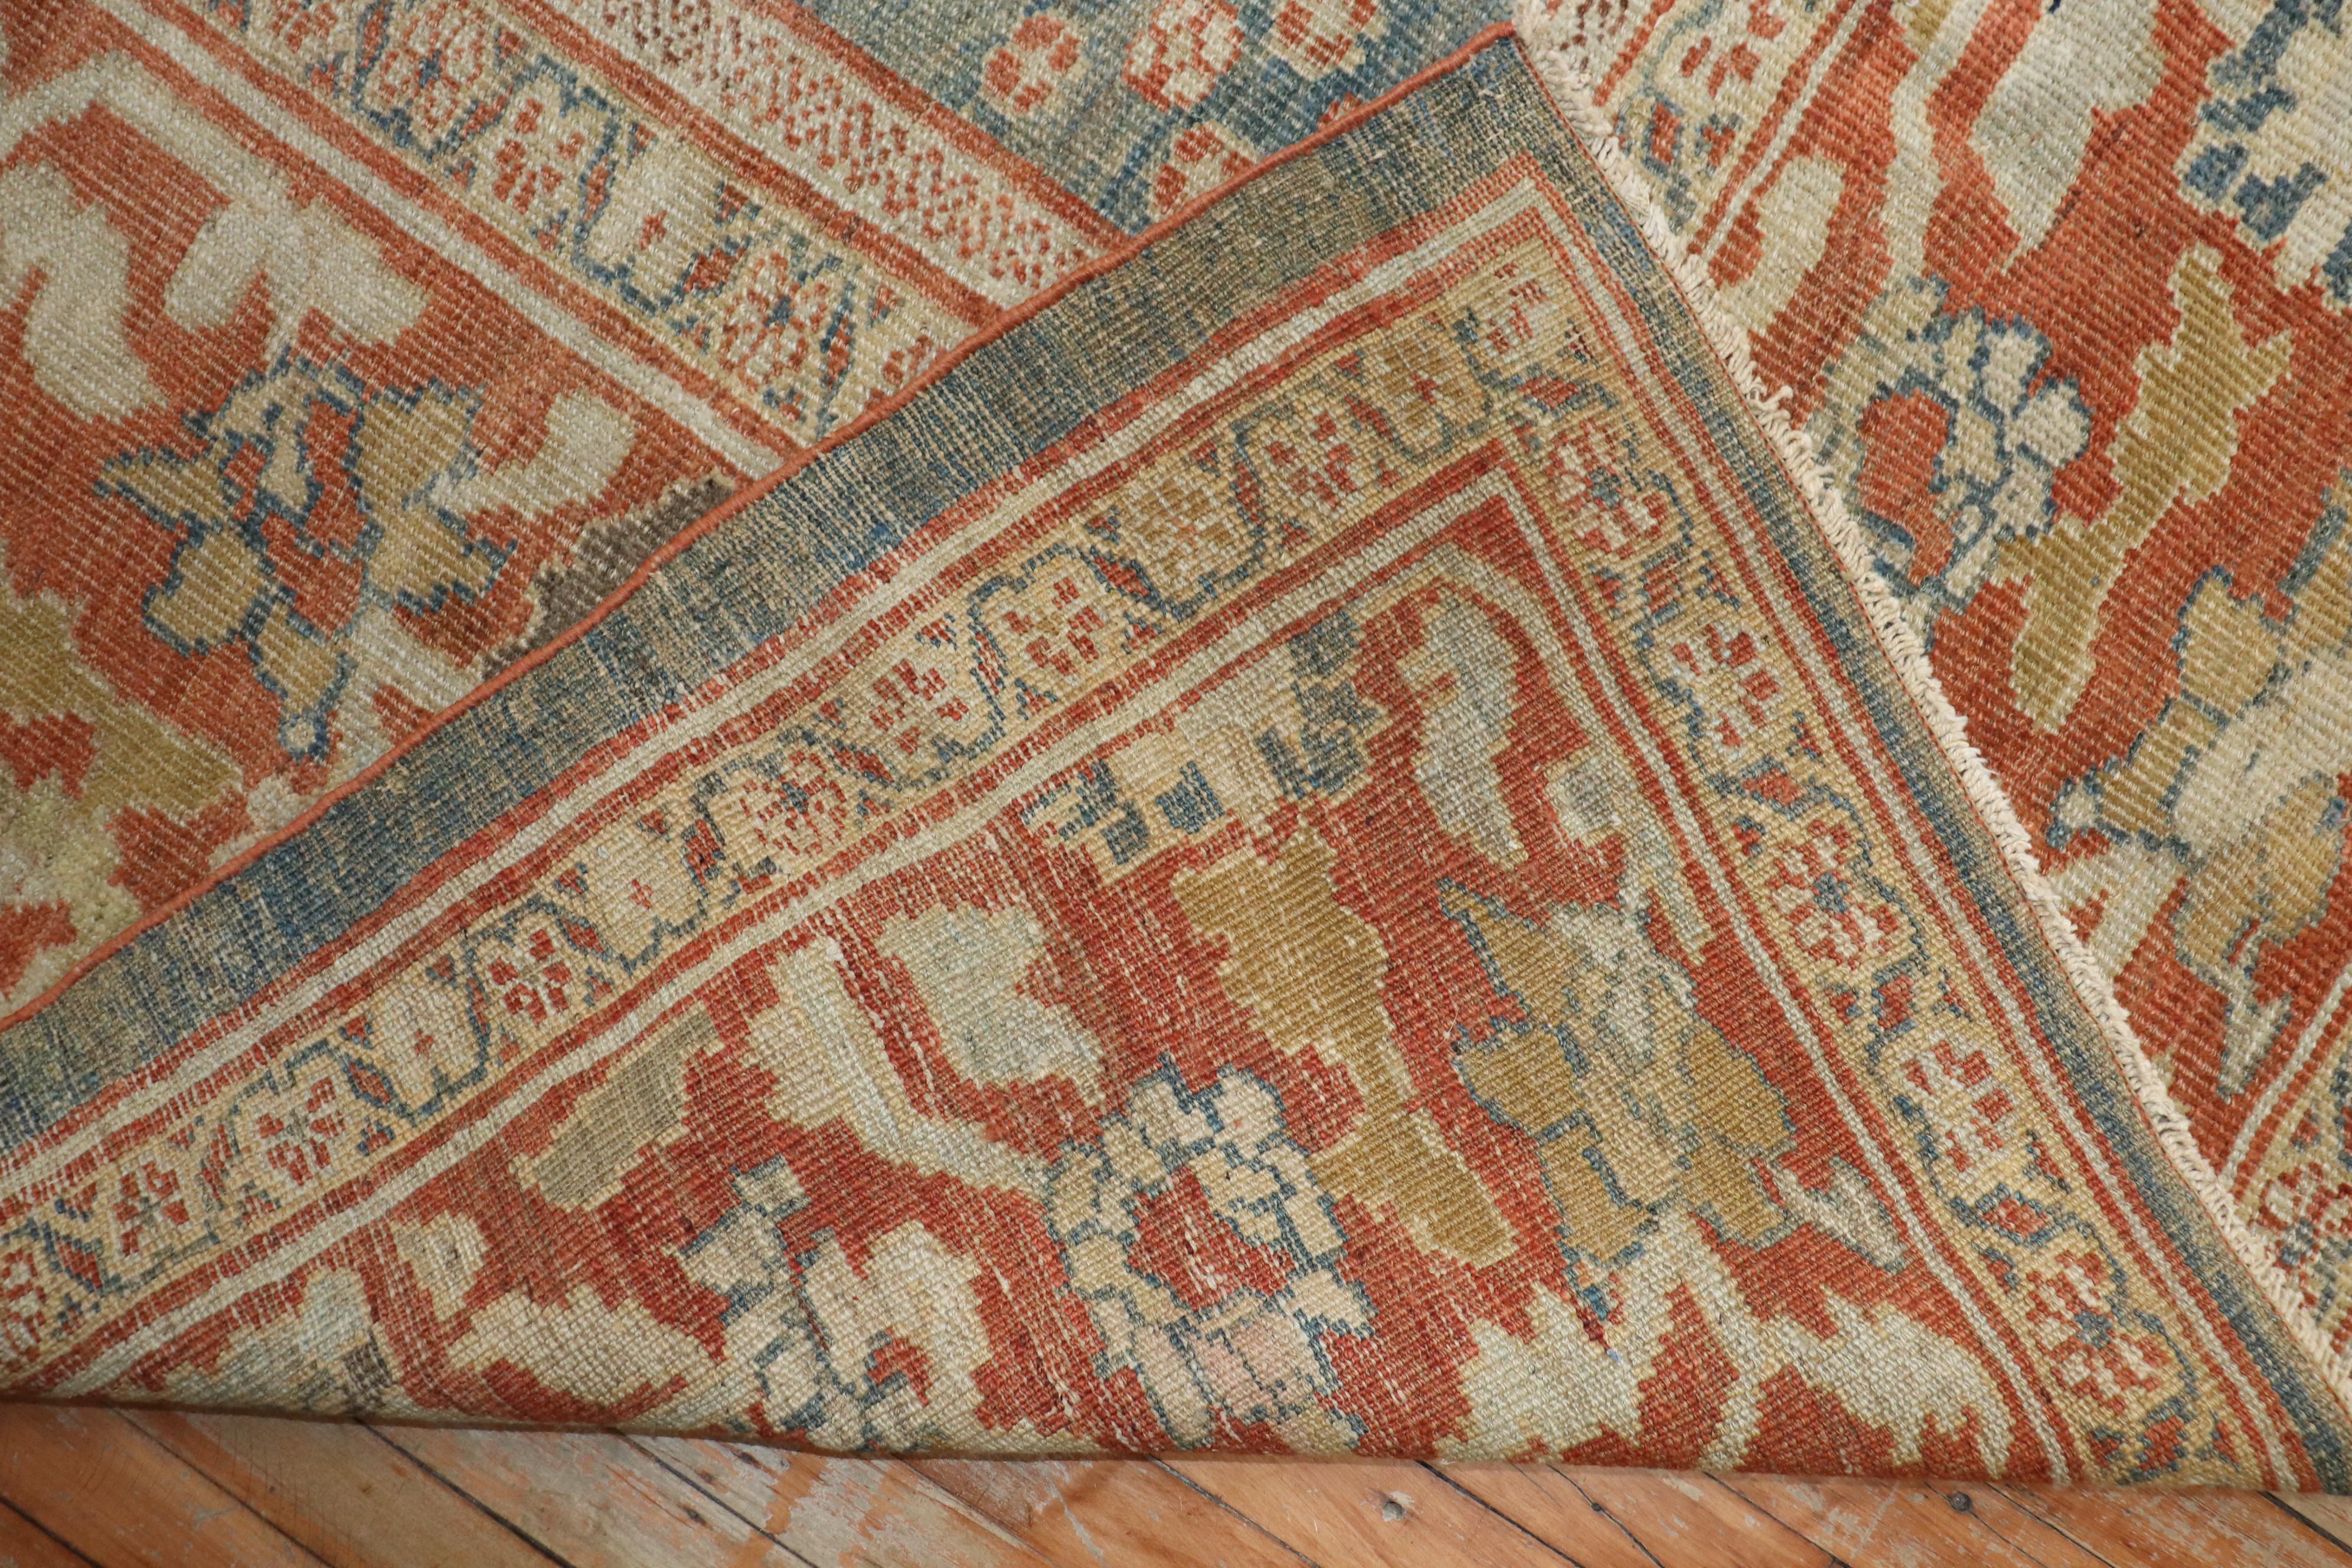 Tapis persan Sultanabad de la fin du 19e siècle de calibre connaisseur.

Mesures : 10'5'' x 13'10''

Tissés dans une série de villages du centre-ouest de l'Iran, les tapis de Sultanabad utilisent des motifs all-over spacieux et à grande échelle